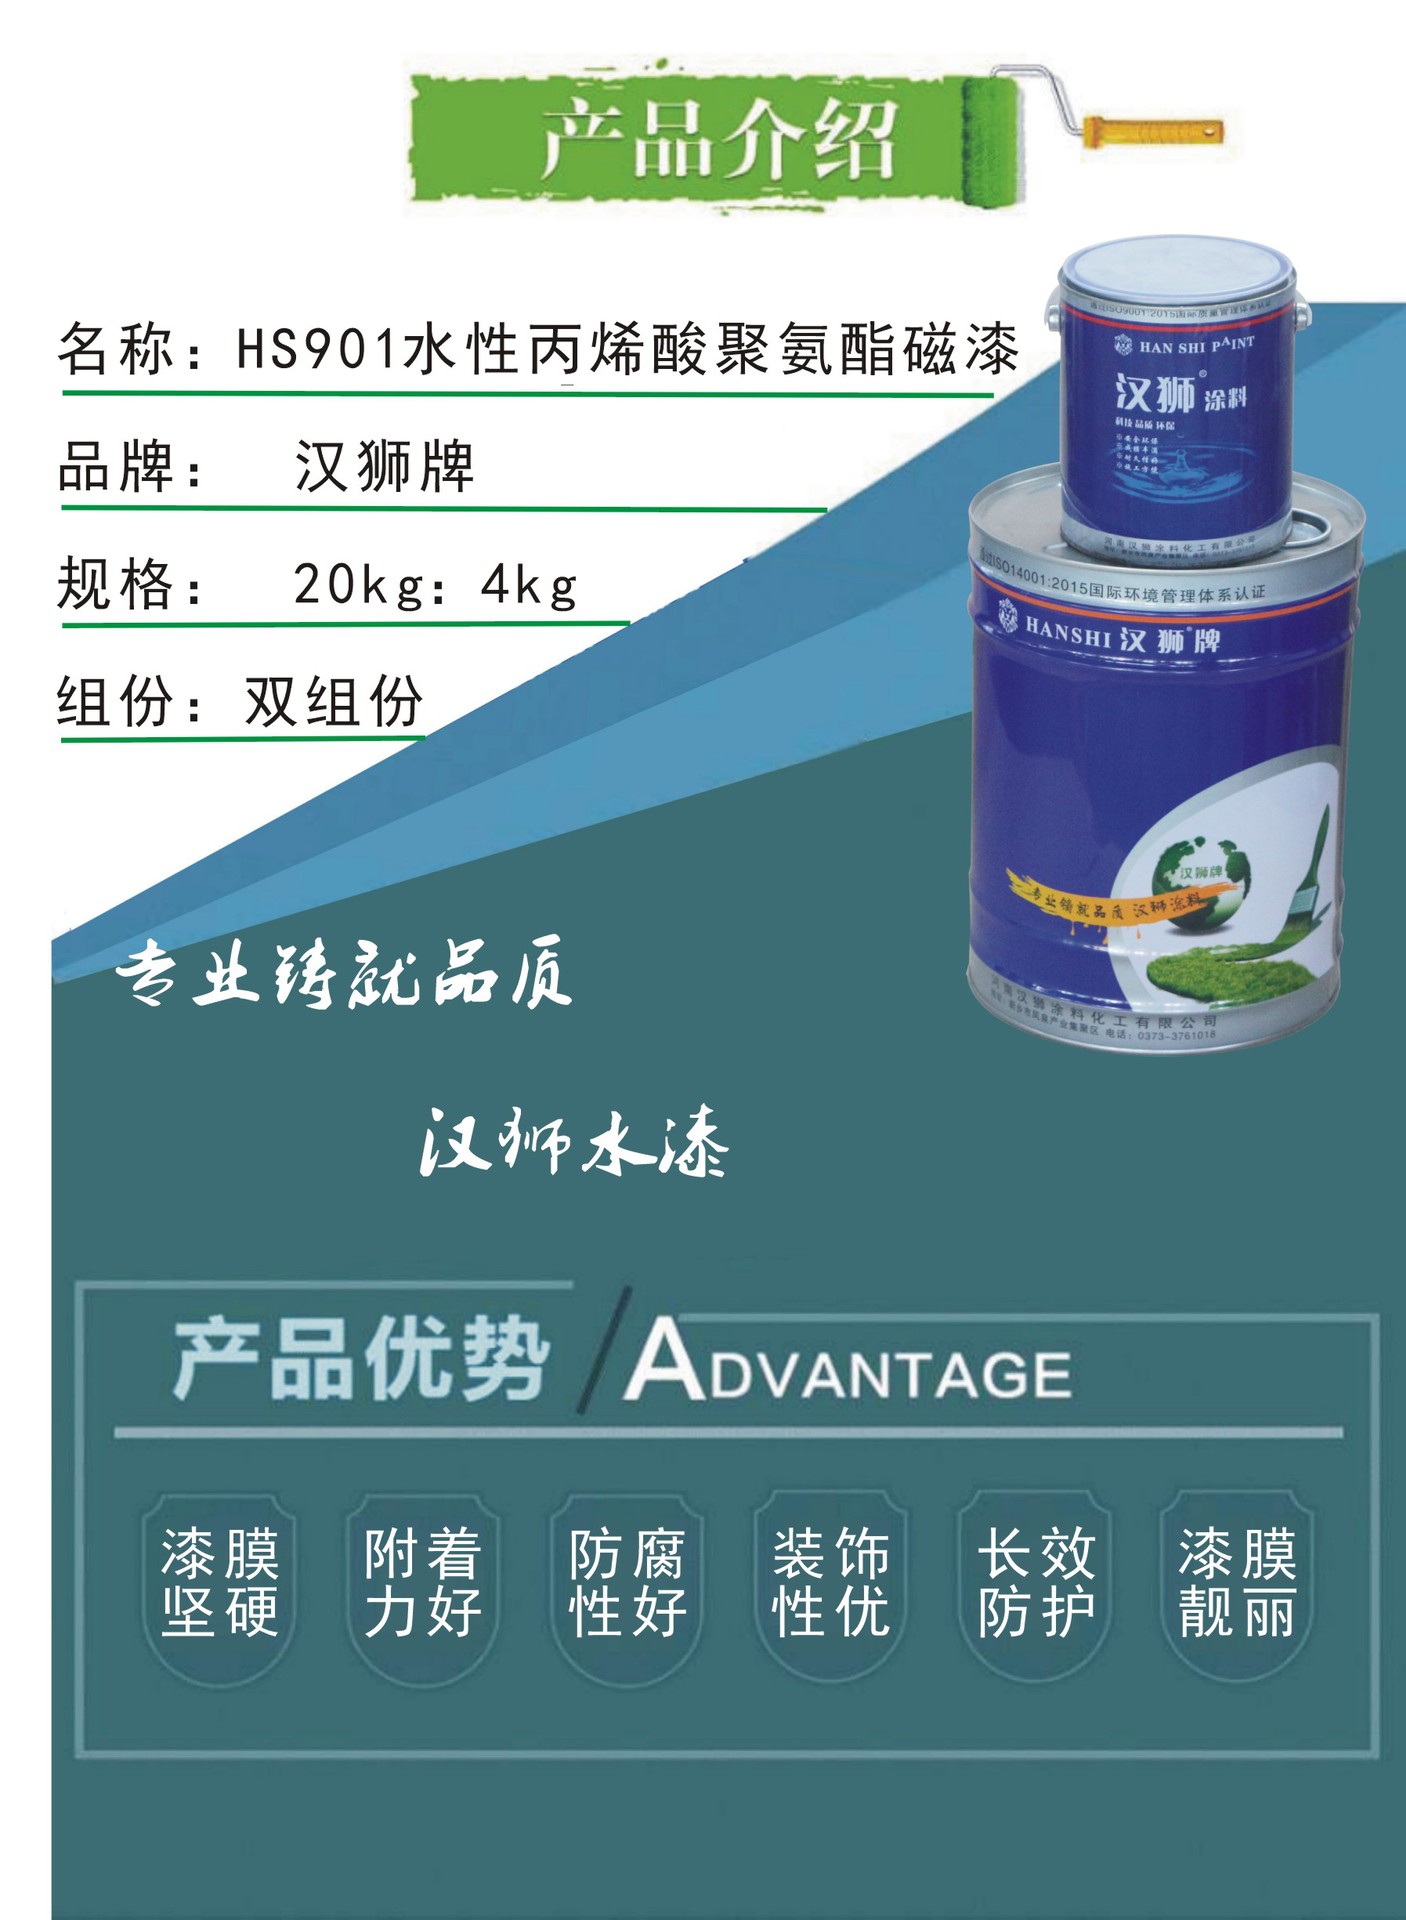 3-HS901水性丙烯酸聚氨酯磁漆-产品介绍